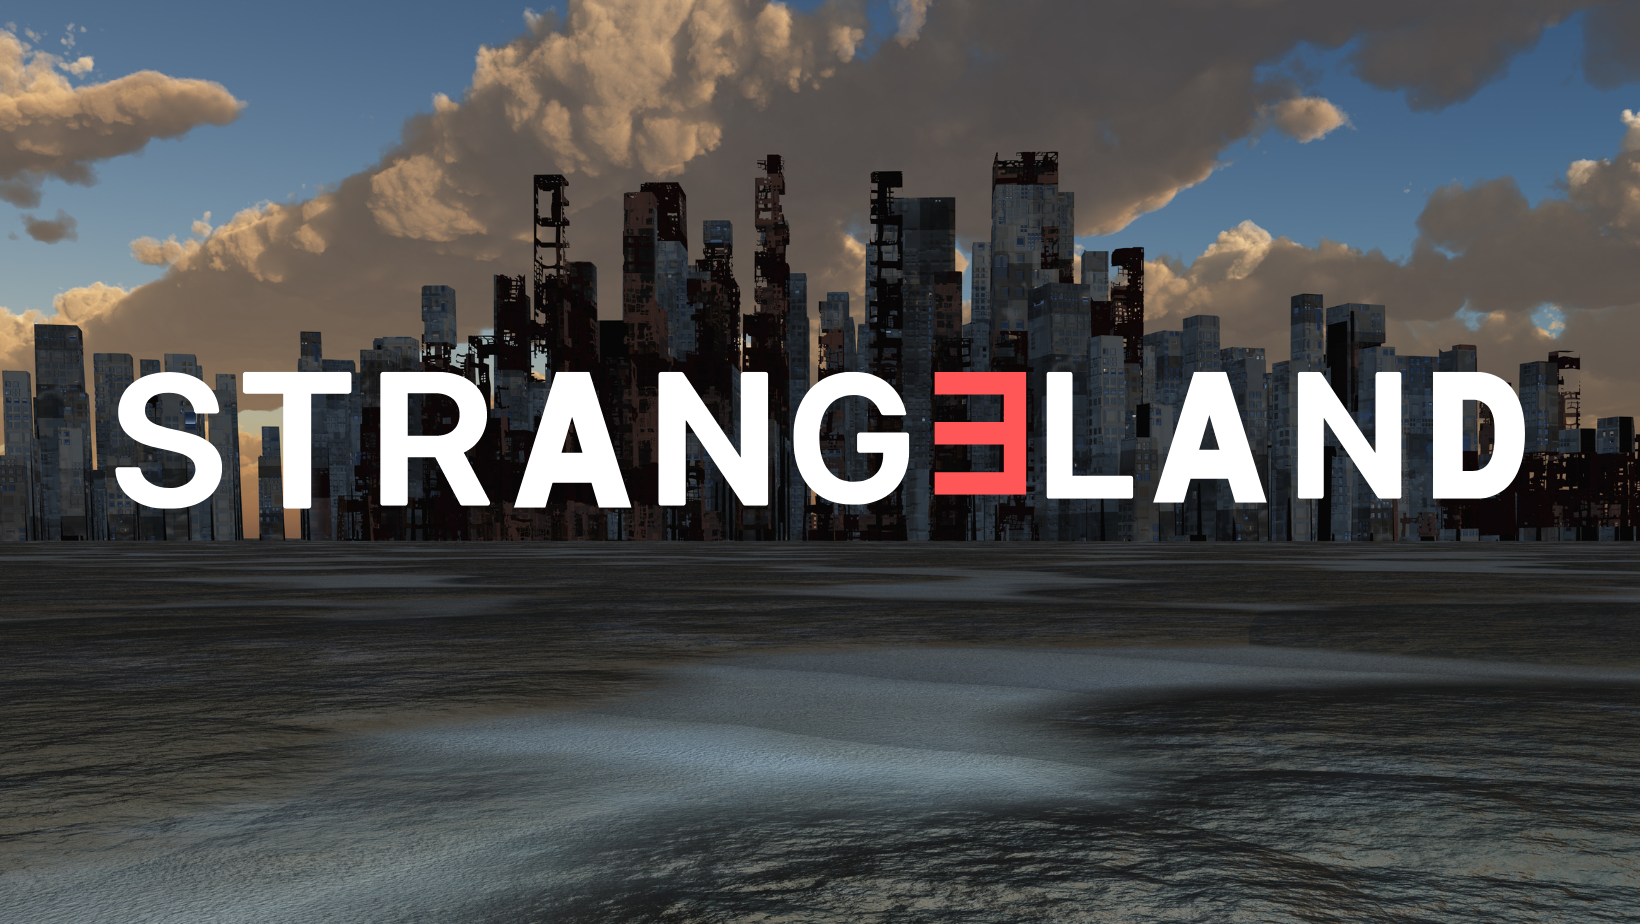 Strangeland Podcast – Listen Here